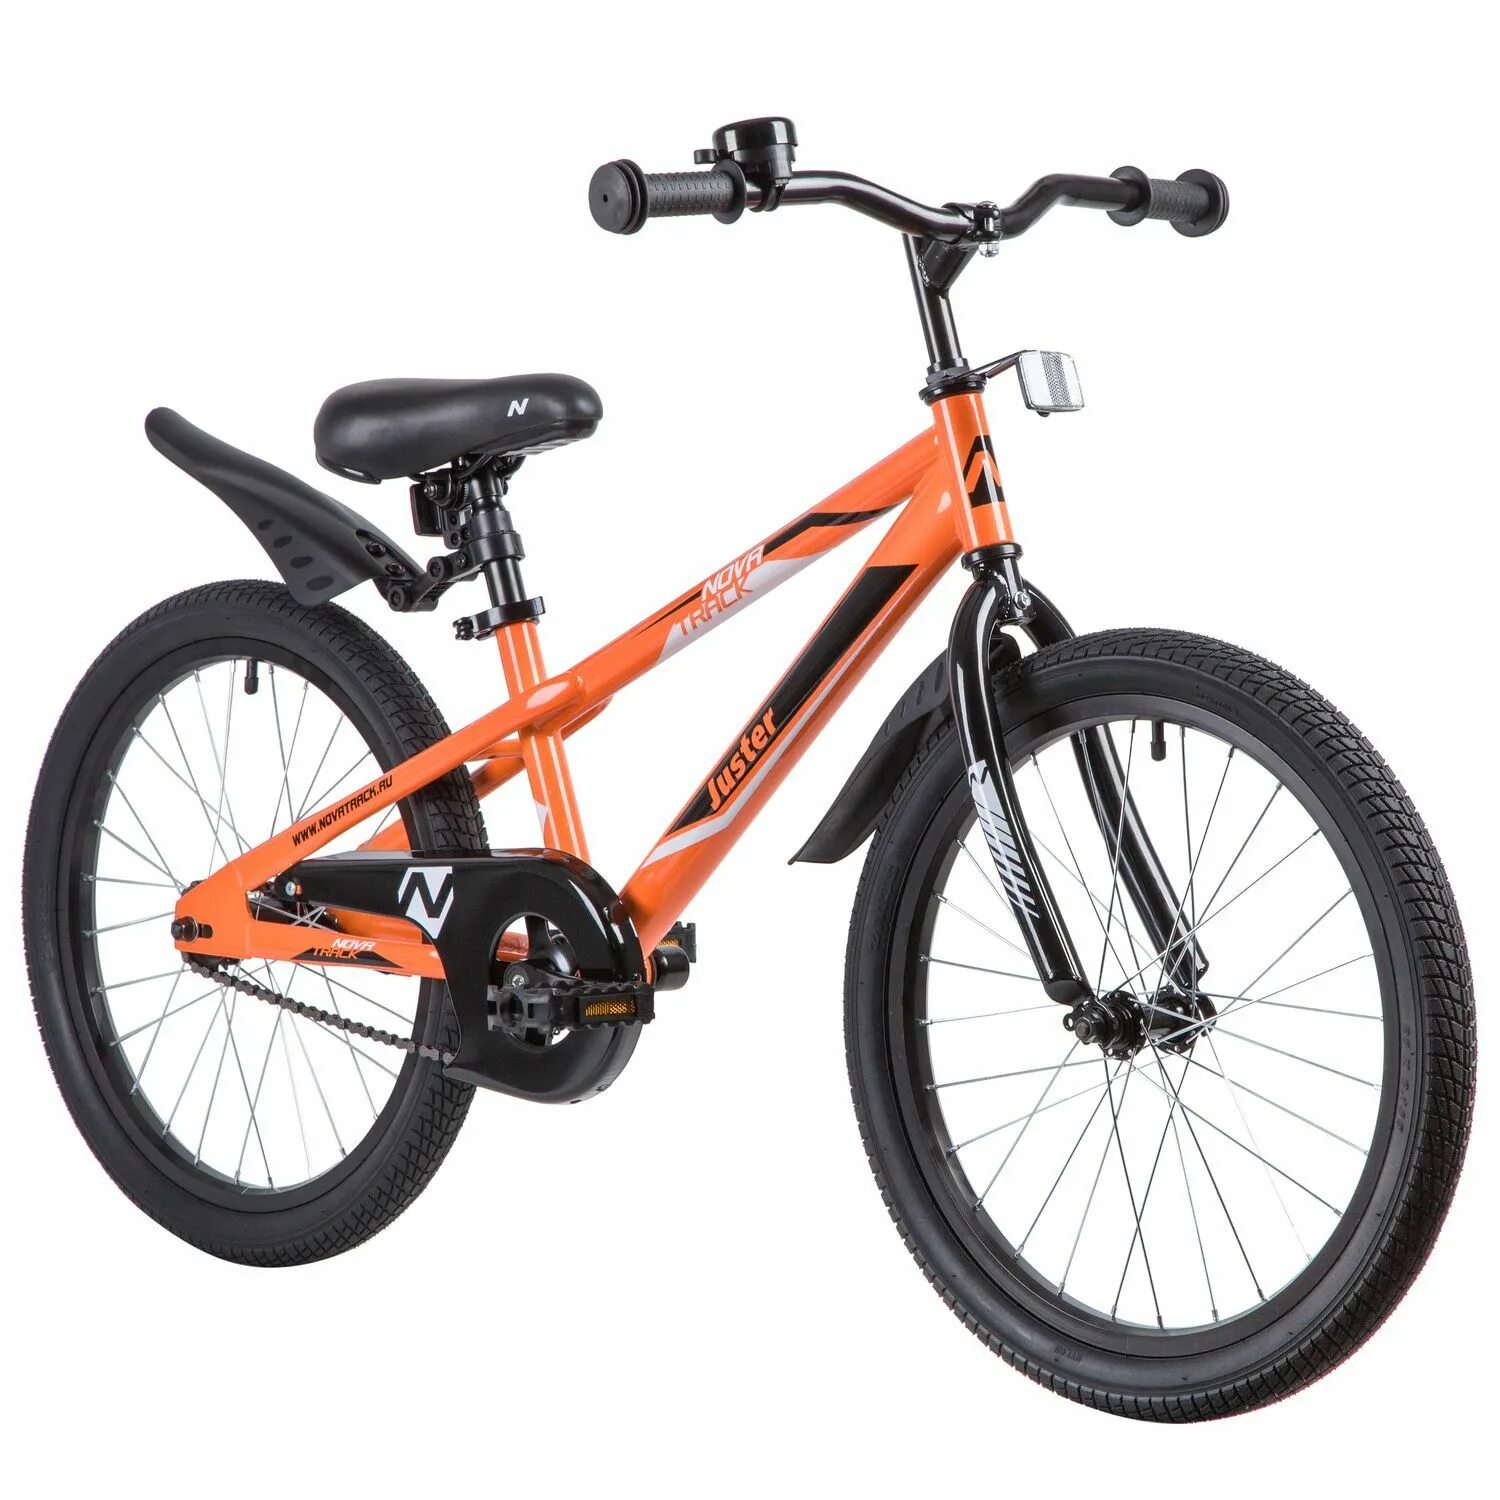 Купить подростковый велосипед для мальчика 10 лет. Велосипед Juster Novatrack. Велосипед Новатрек 20. Novatrack велосипеды 20 дюймов. Велосипед Новатрек подростковый оранжевый.